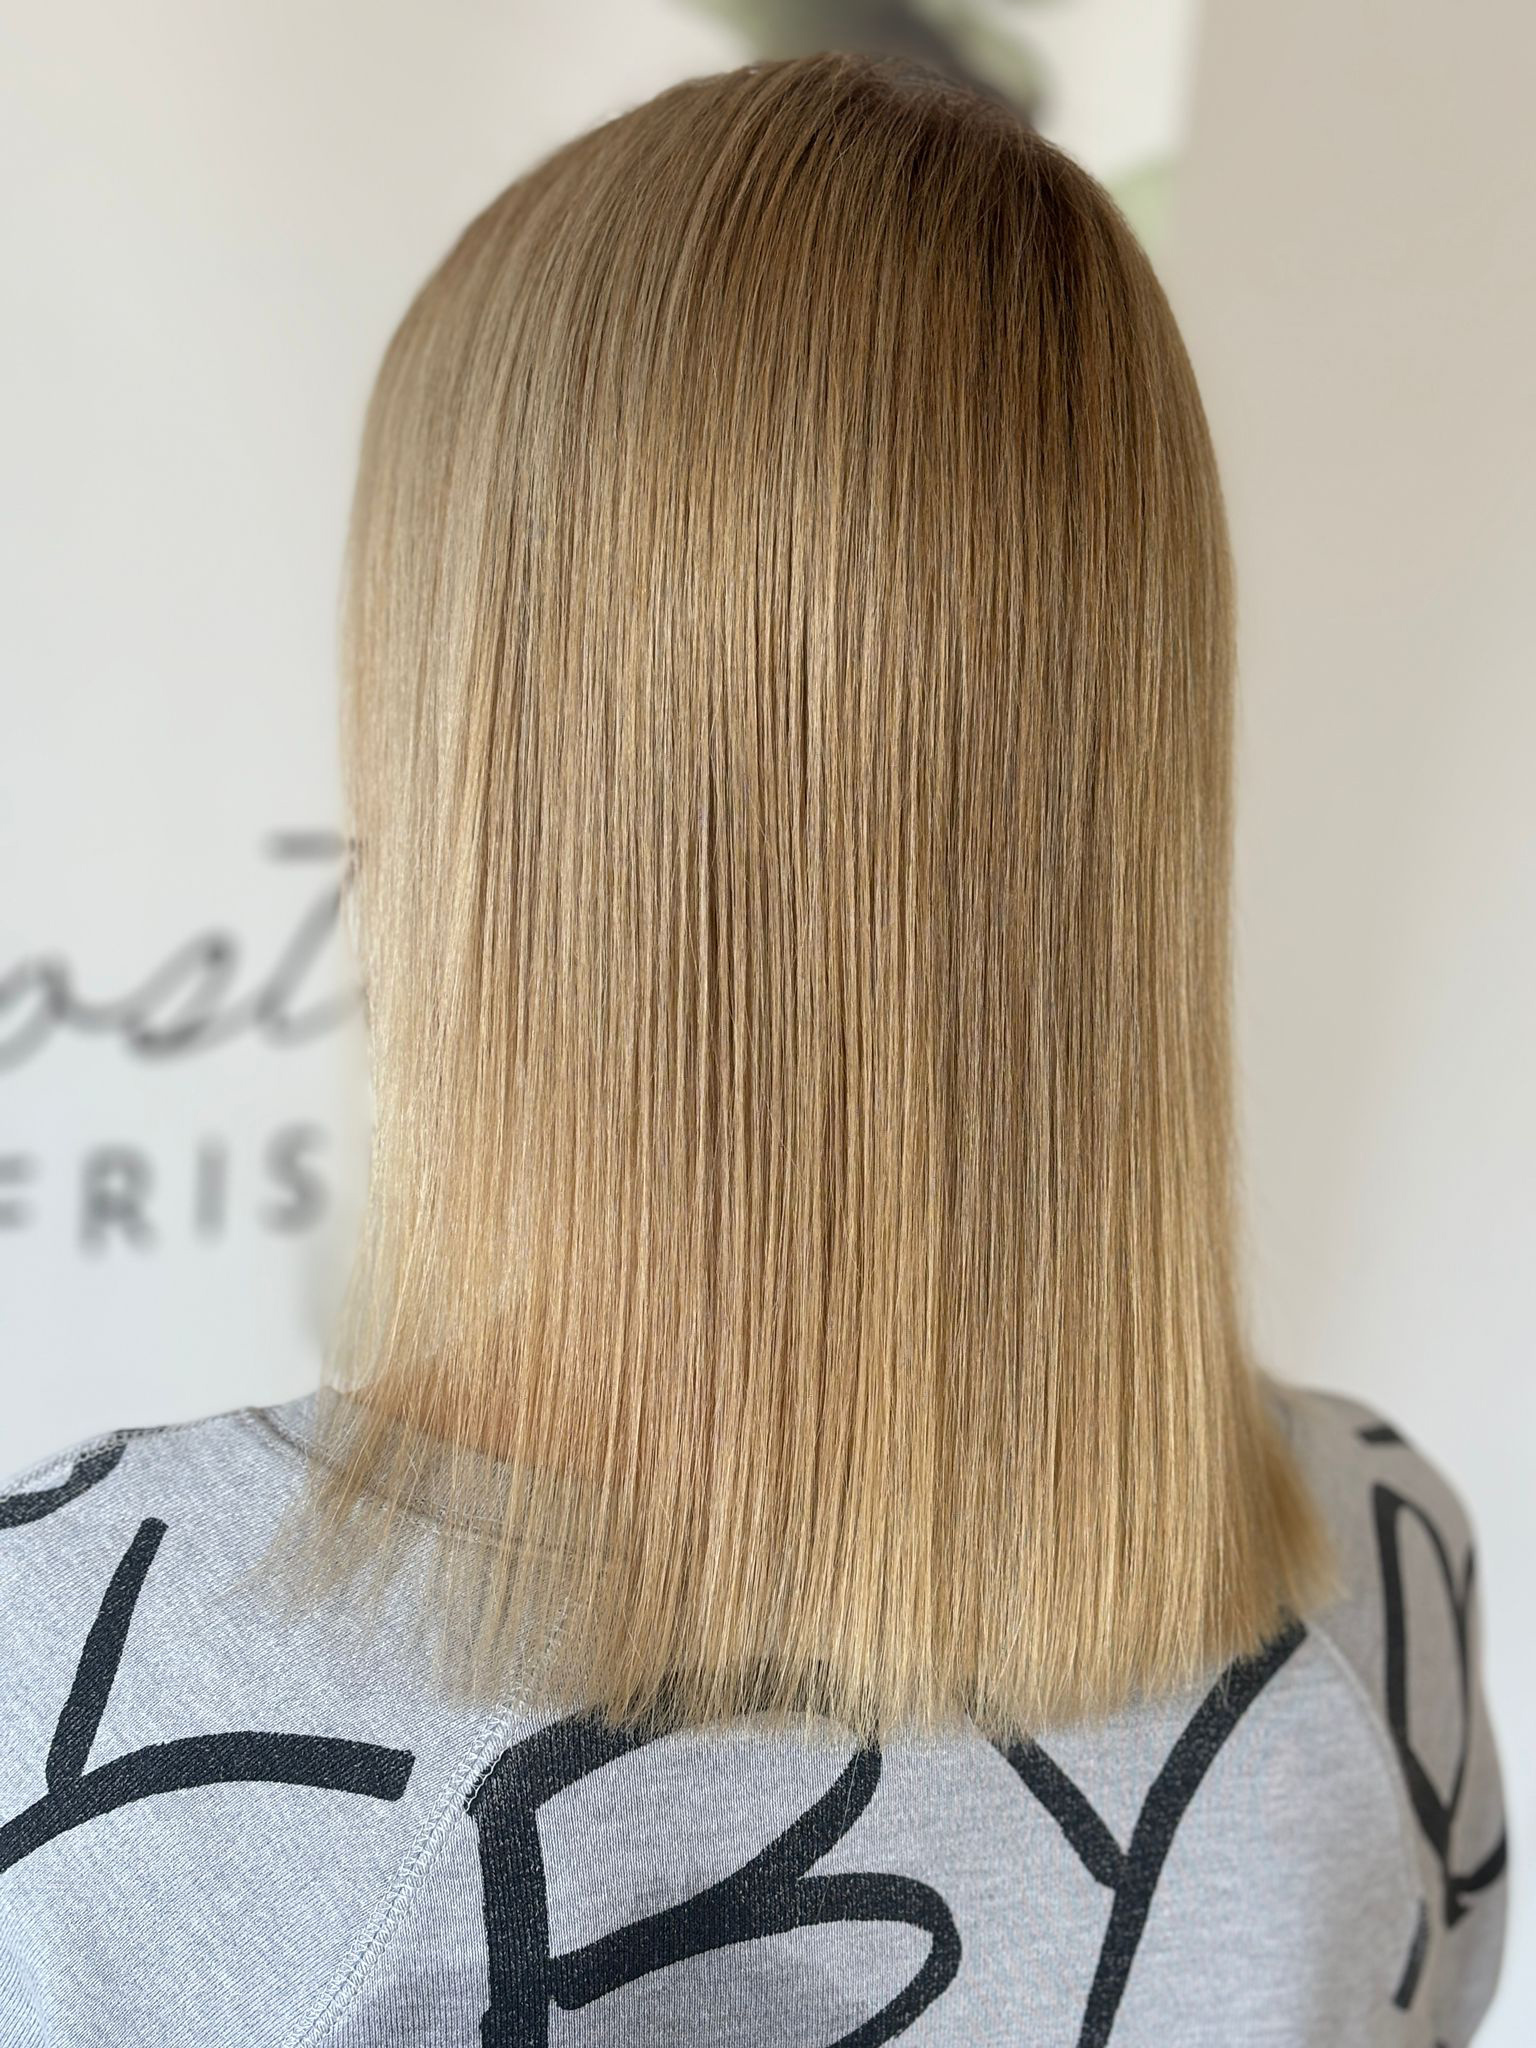 Blonde, glatte Haare nach der Haarbotoxbehandlung bei Julia Postika Friseure